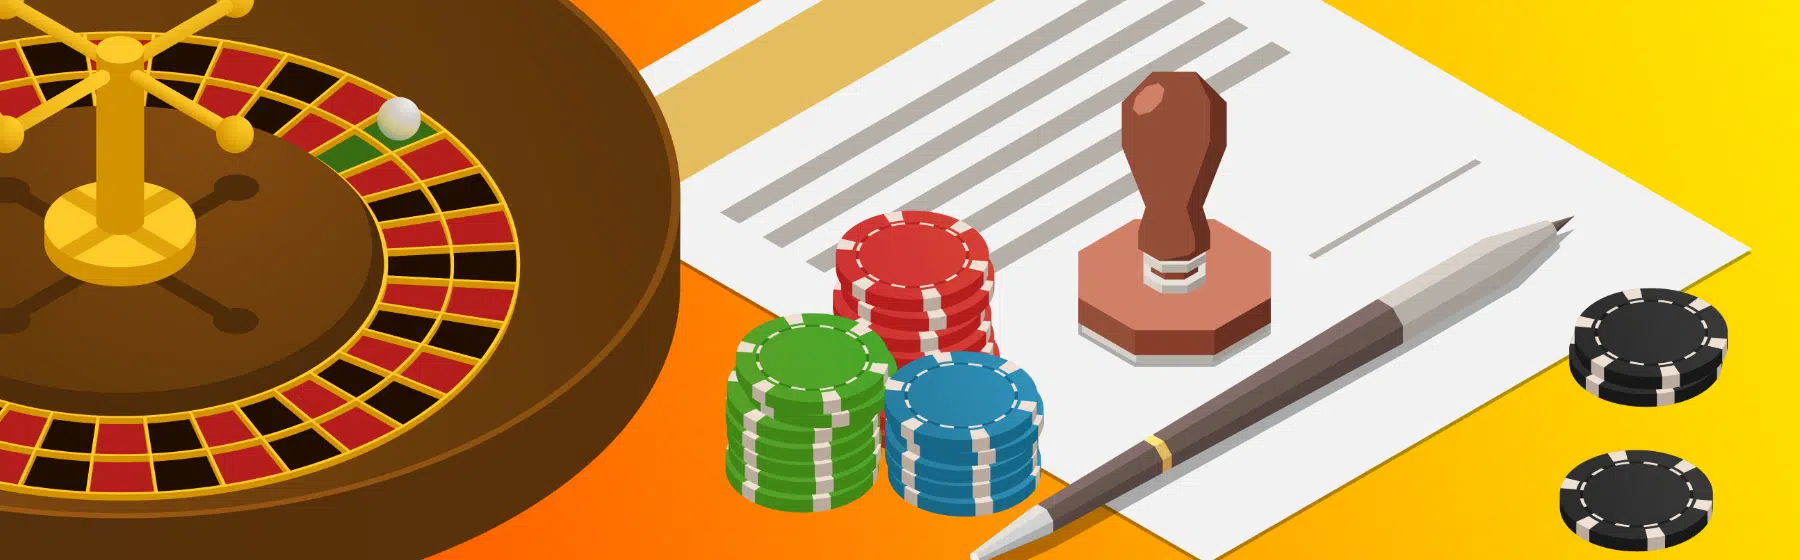 roulette, casinofiches en een geldigheidsdocument met een stempel